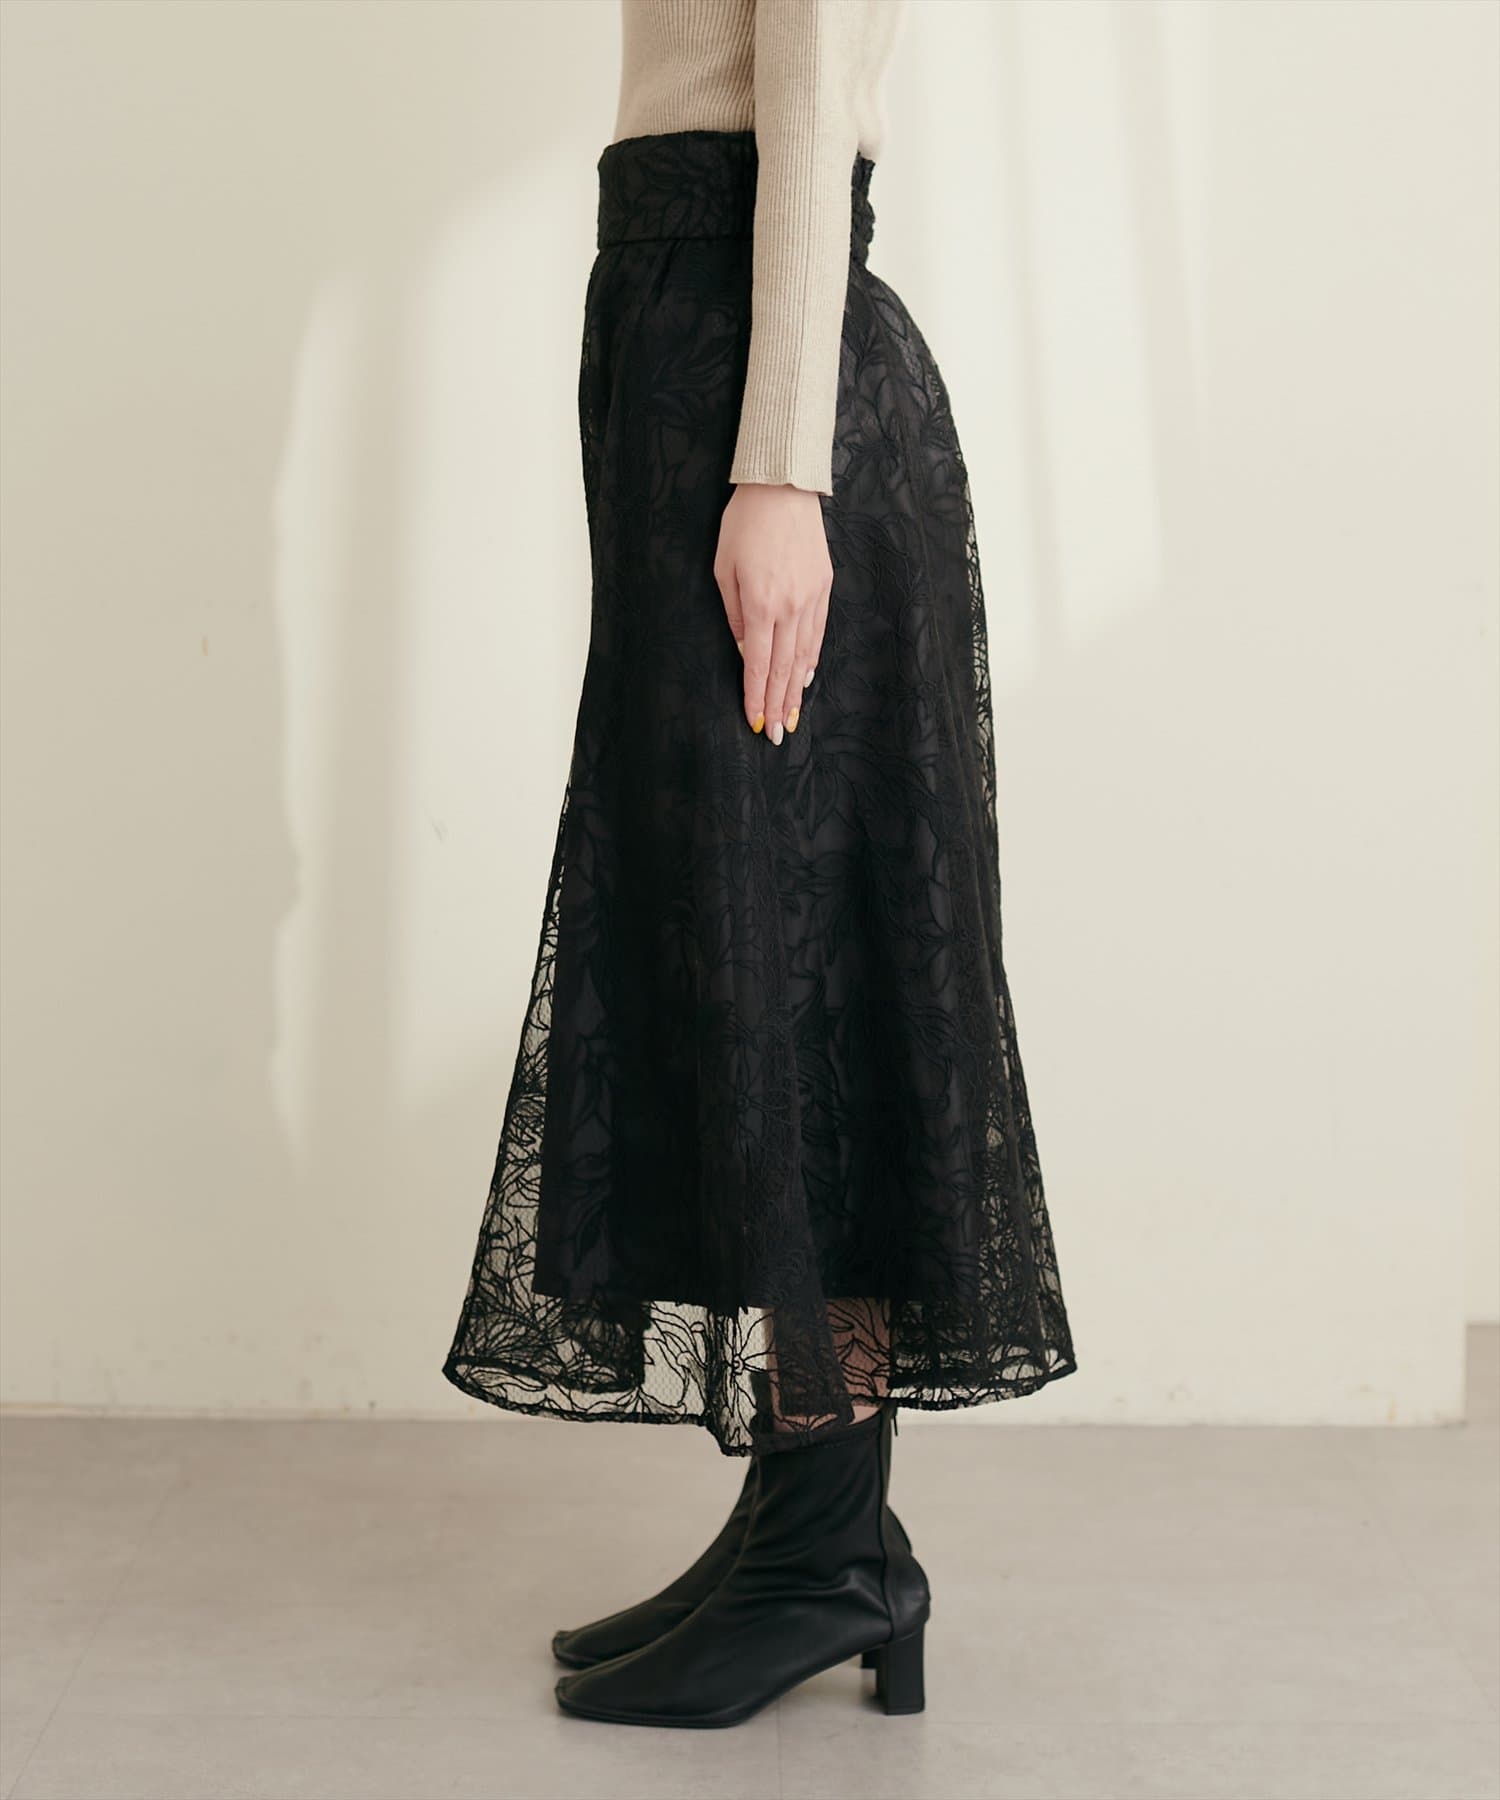 natural couture(ナチュラルクチュール) osono長さ変えれるチュール刺繍レーススカート